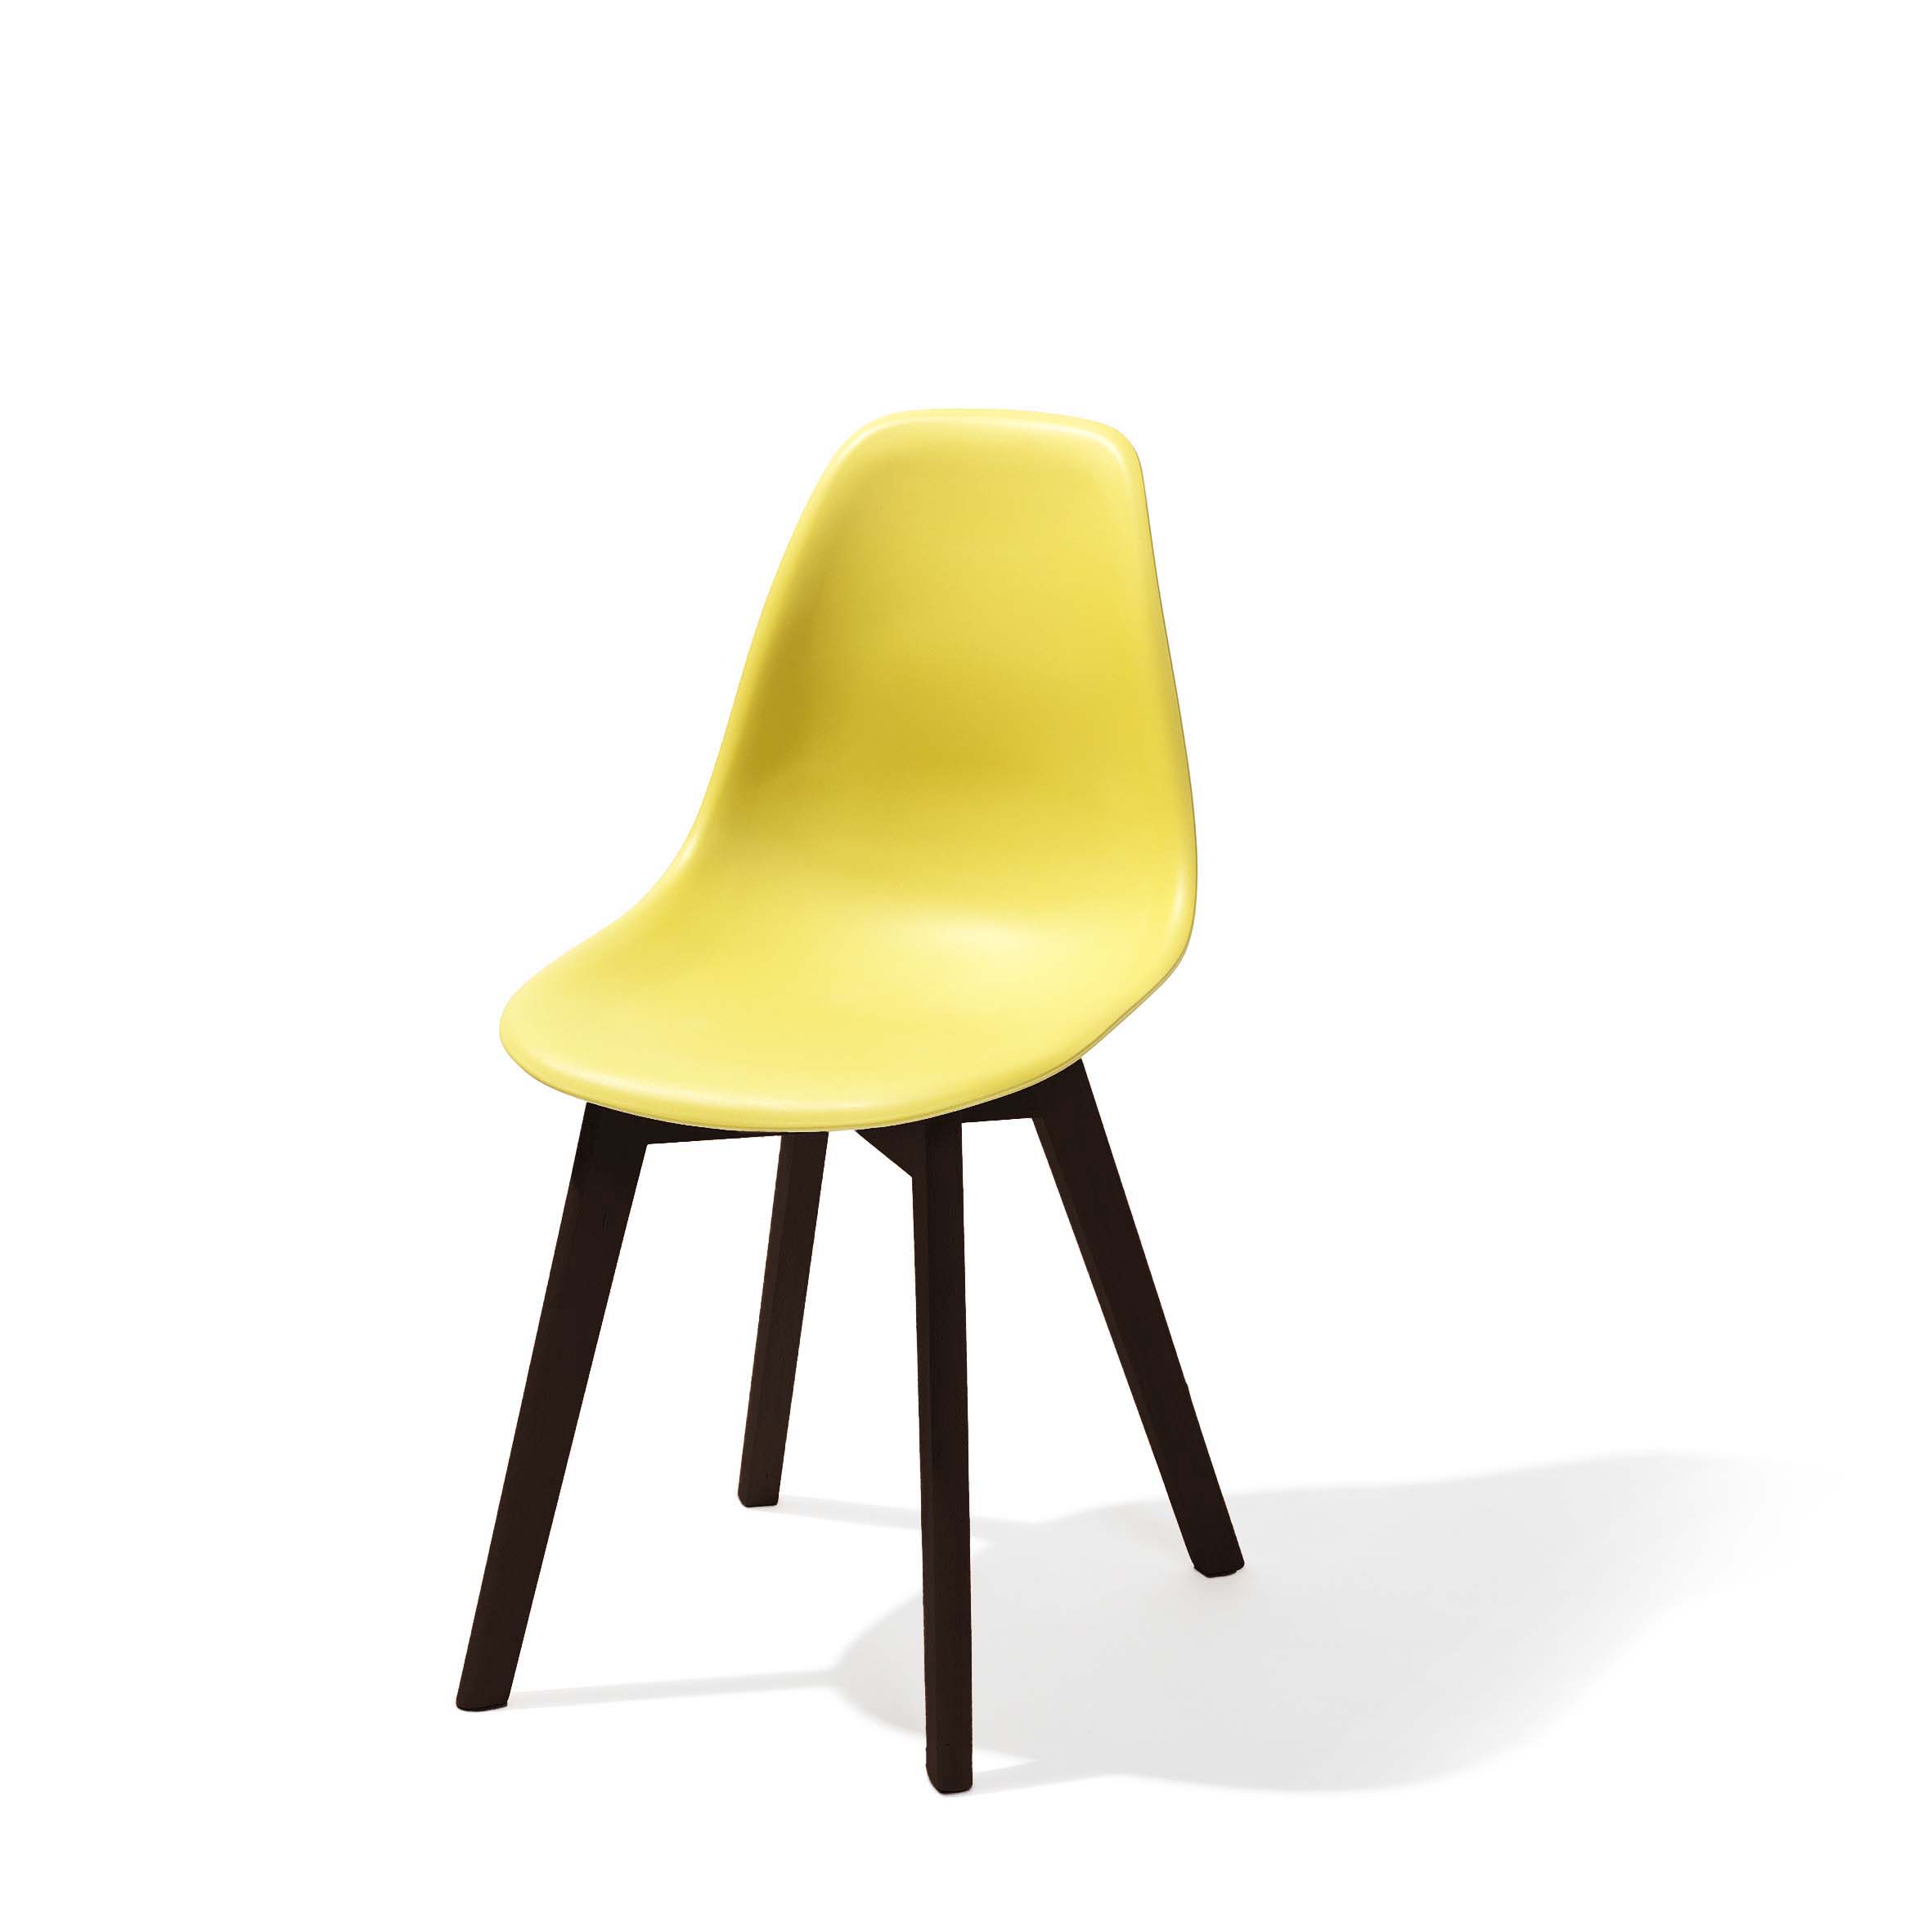 Keeve stapelstoel geel - Donkerbruin frame 